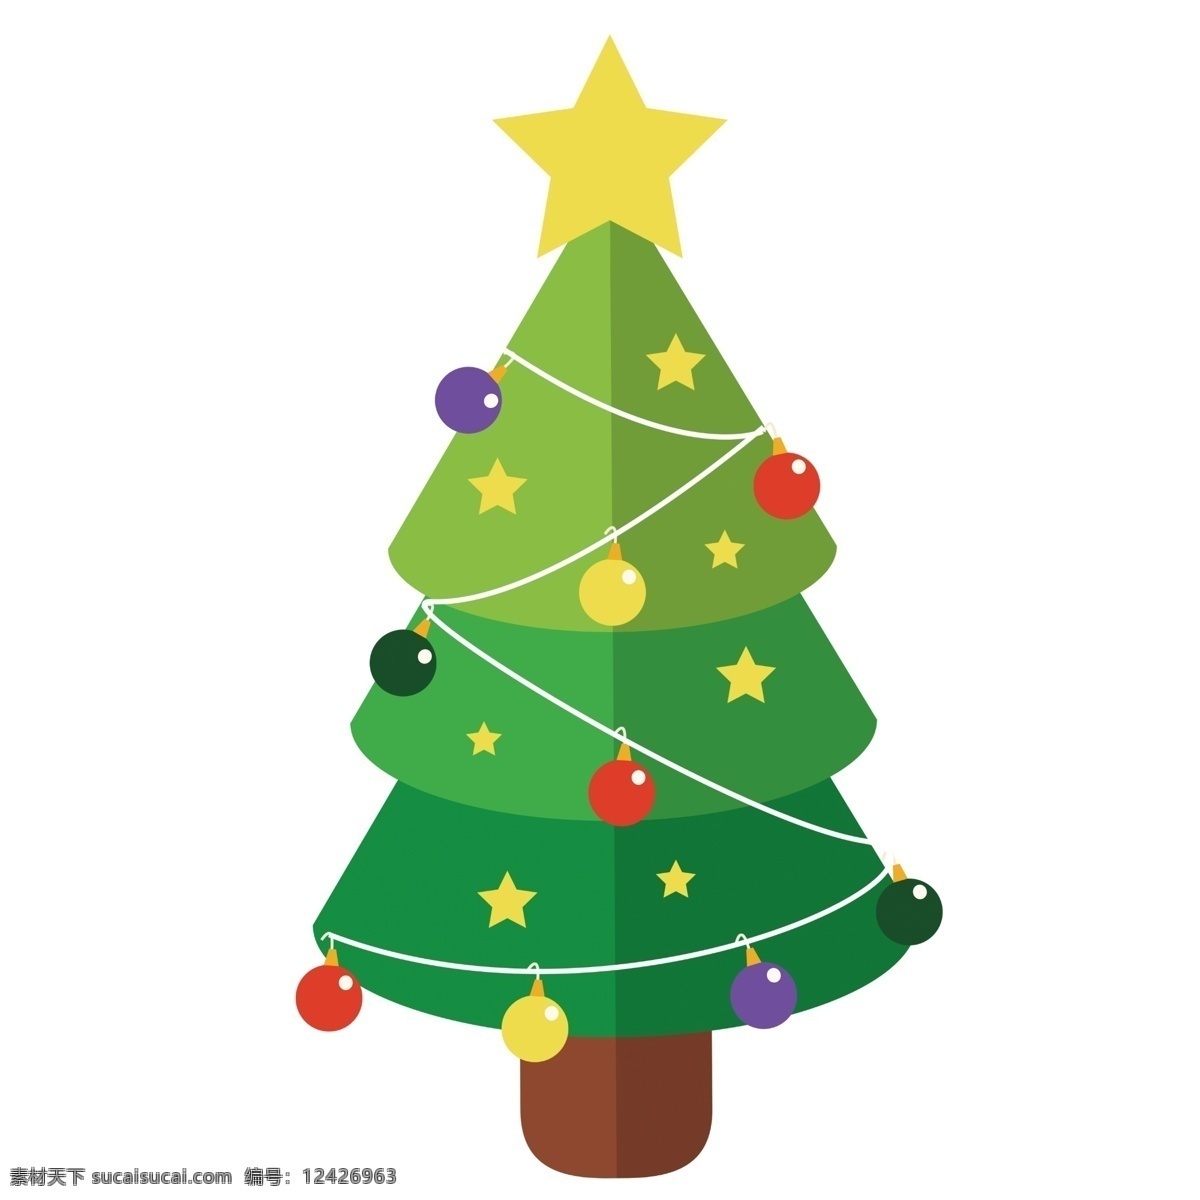 手绘 植物 插图 圣诞树 树 大树 圣诞节 植物插图 圣诞树植物 圣诞树插画 圣诞树插图 圣诞树挂件 圣诞树设计